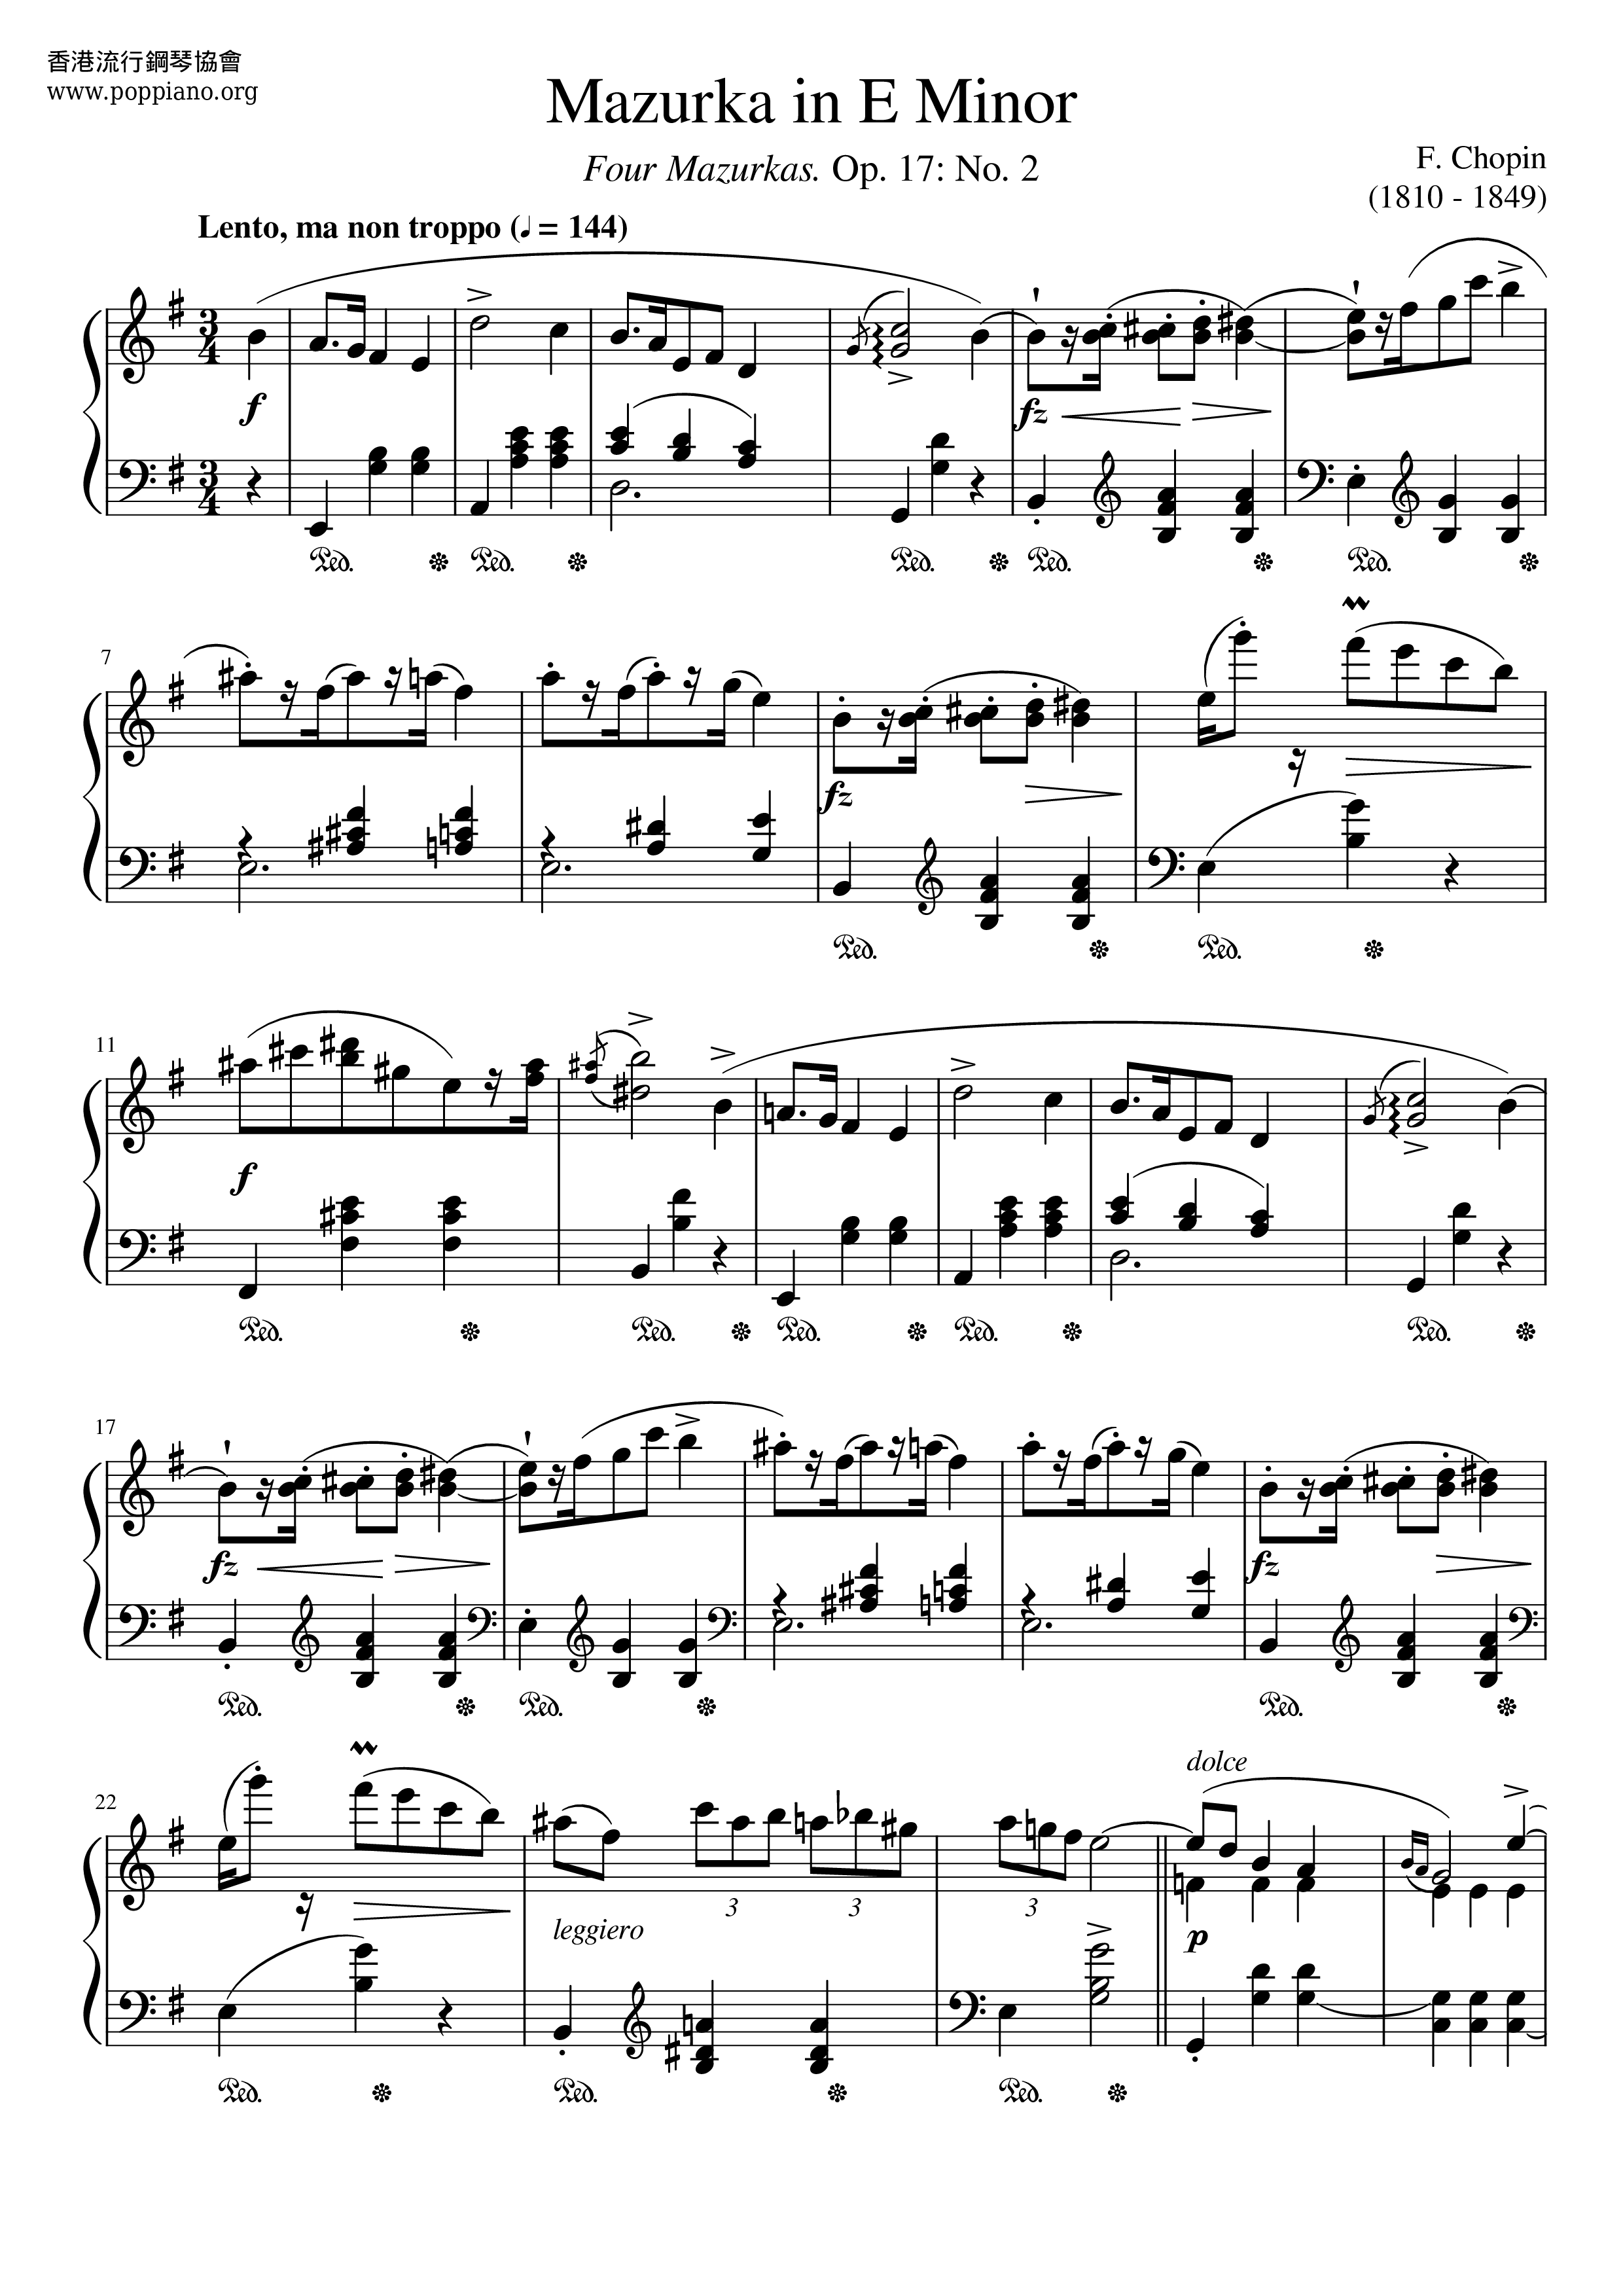 Mazurka In E Minor, Op. 17 No. 2 Score